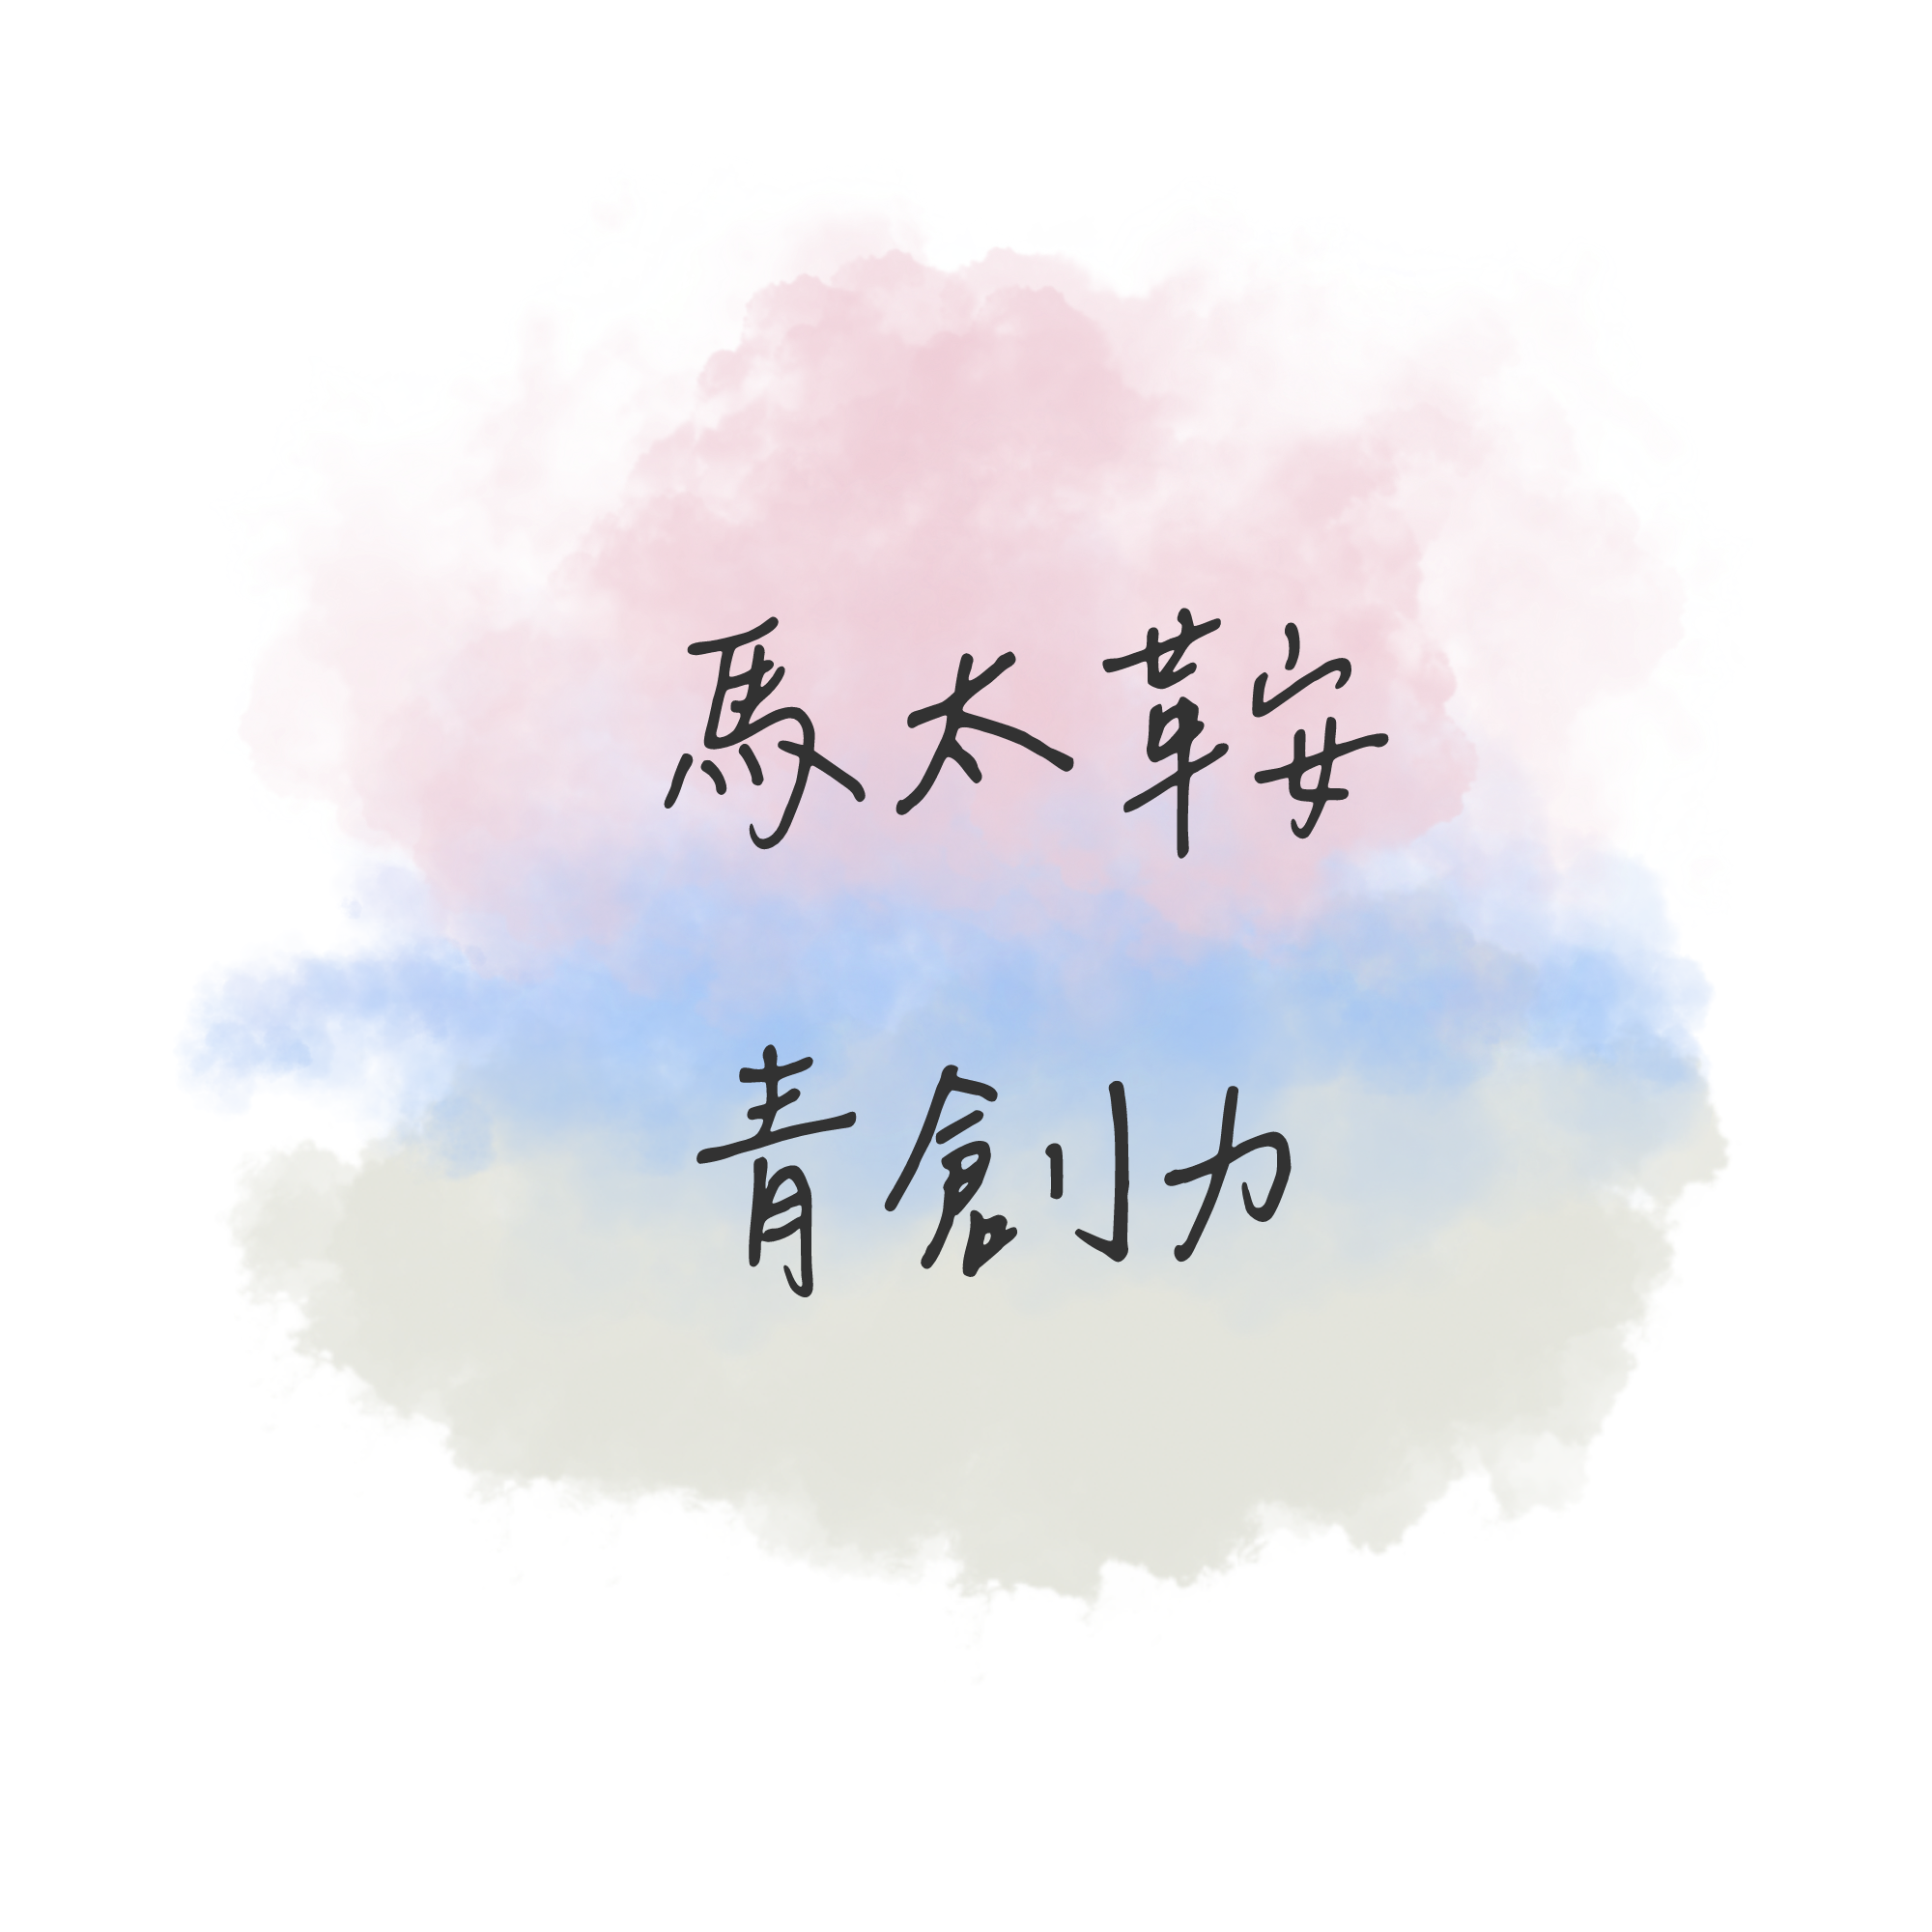 馬太鞍青創力Logo